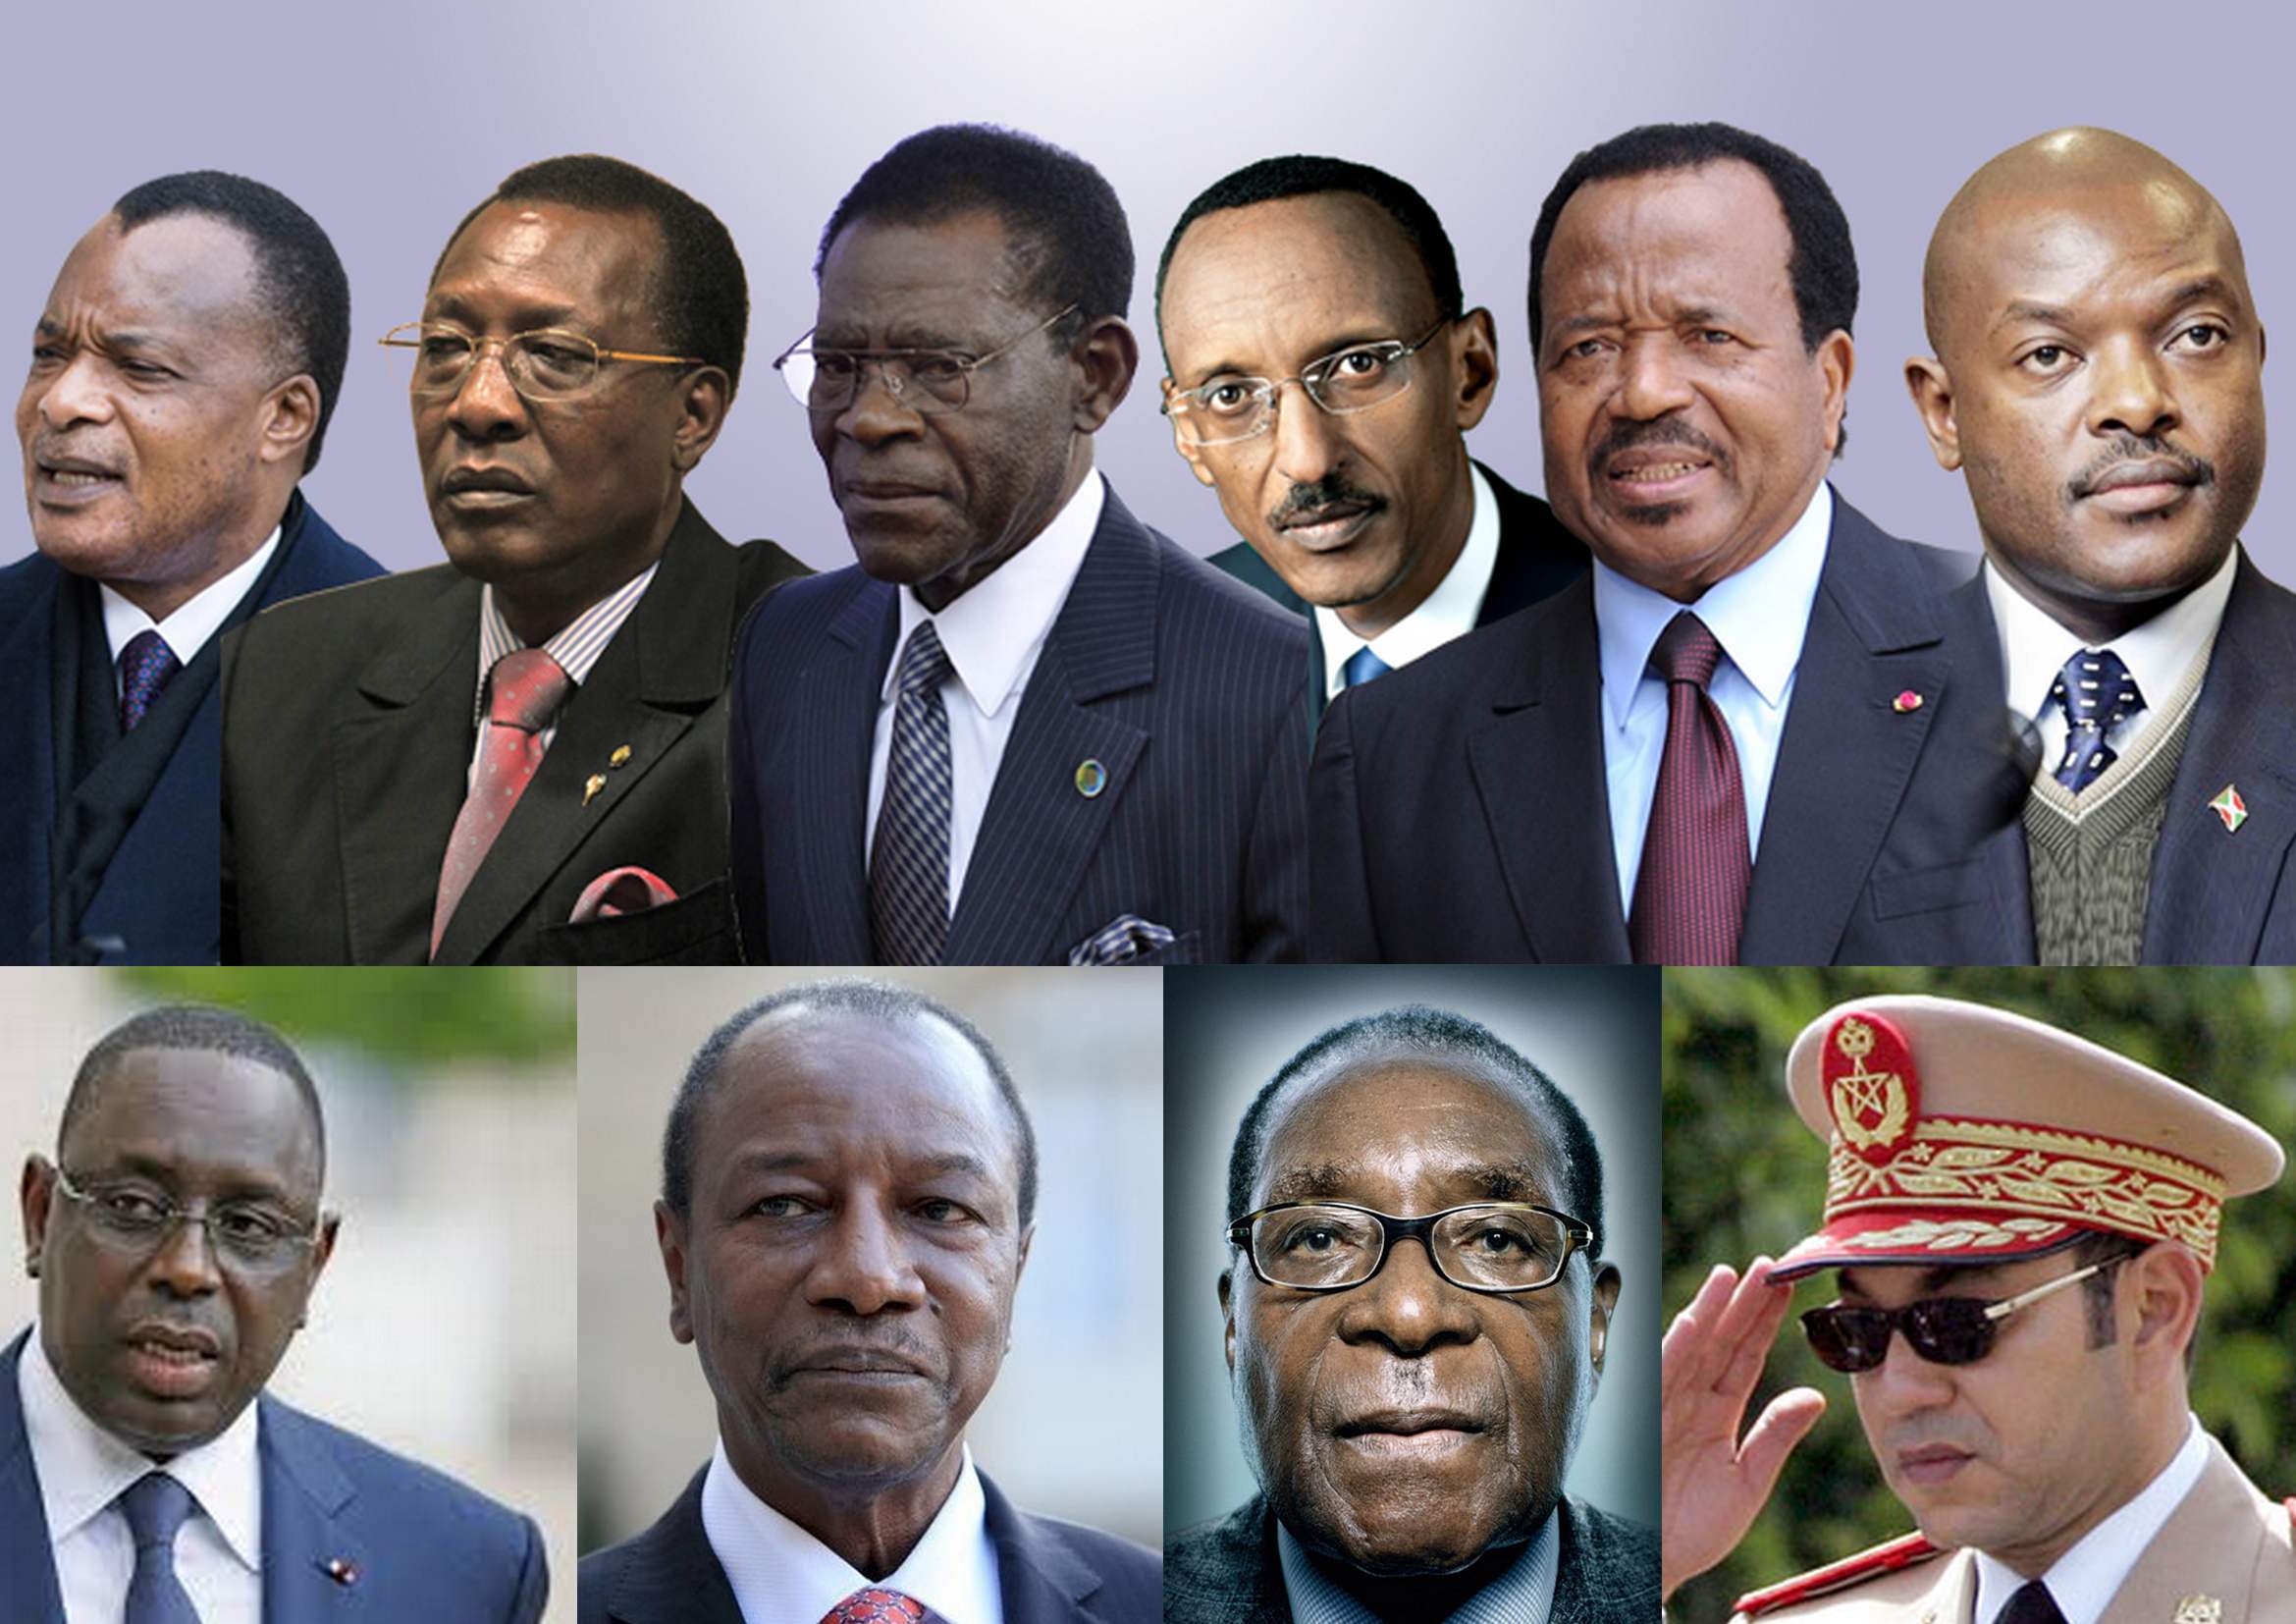 Salaire des chefs d'Etat africains : Macky Sall parmi les Présidents les plus mal payés